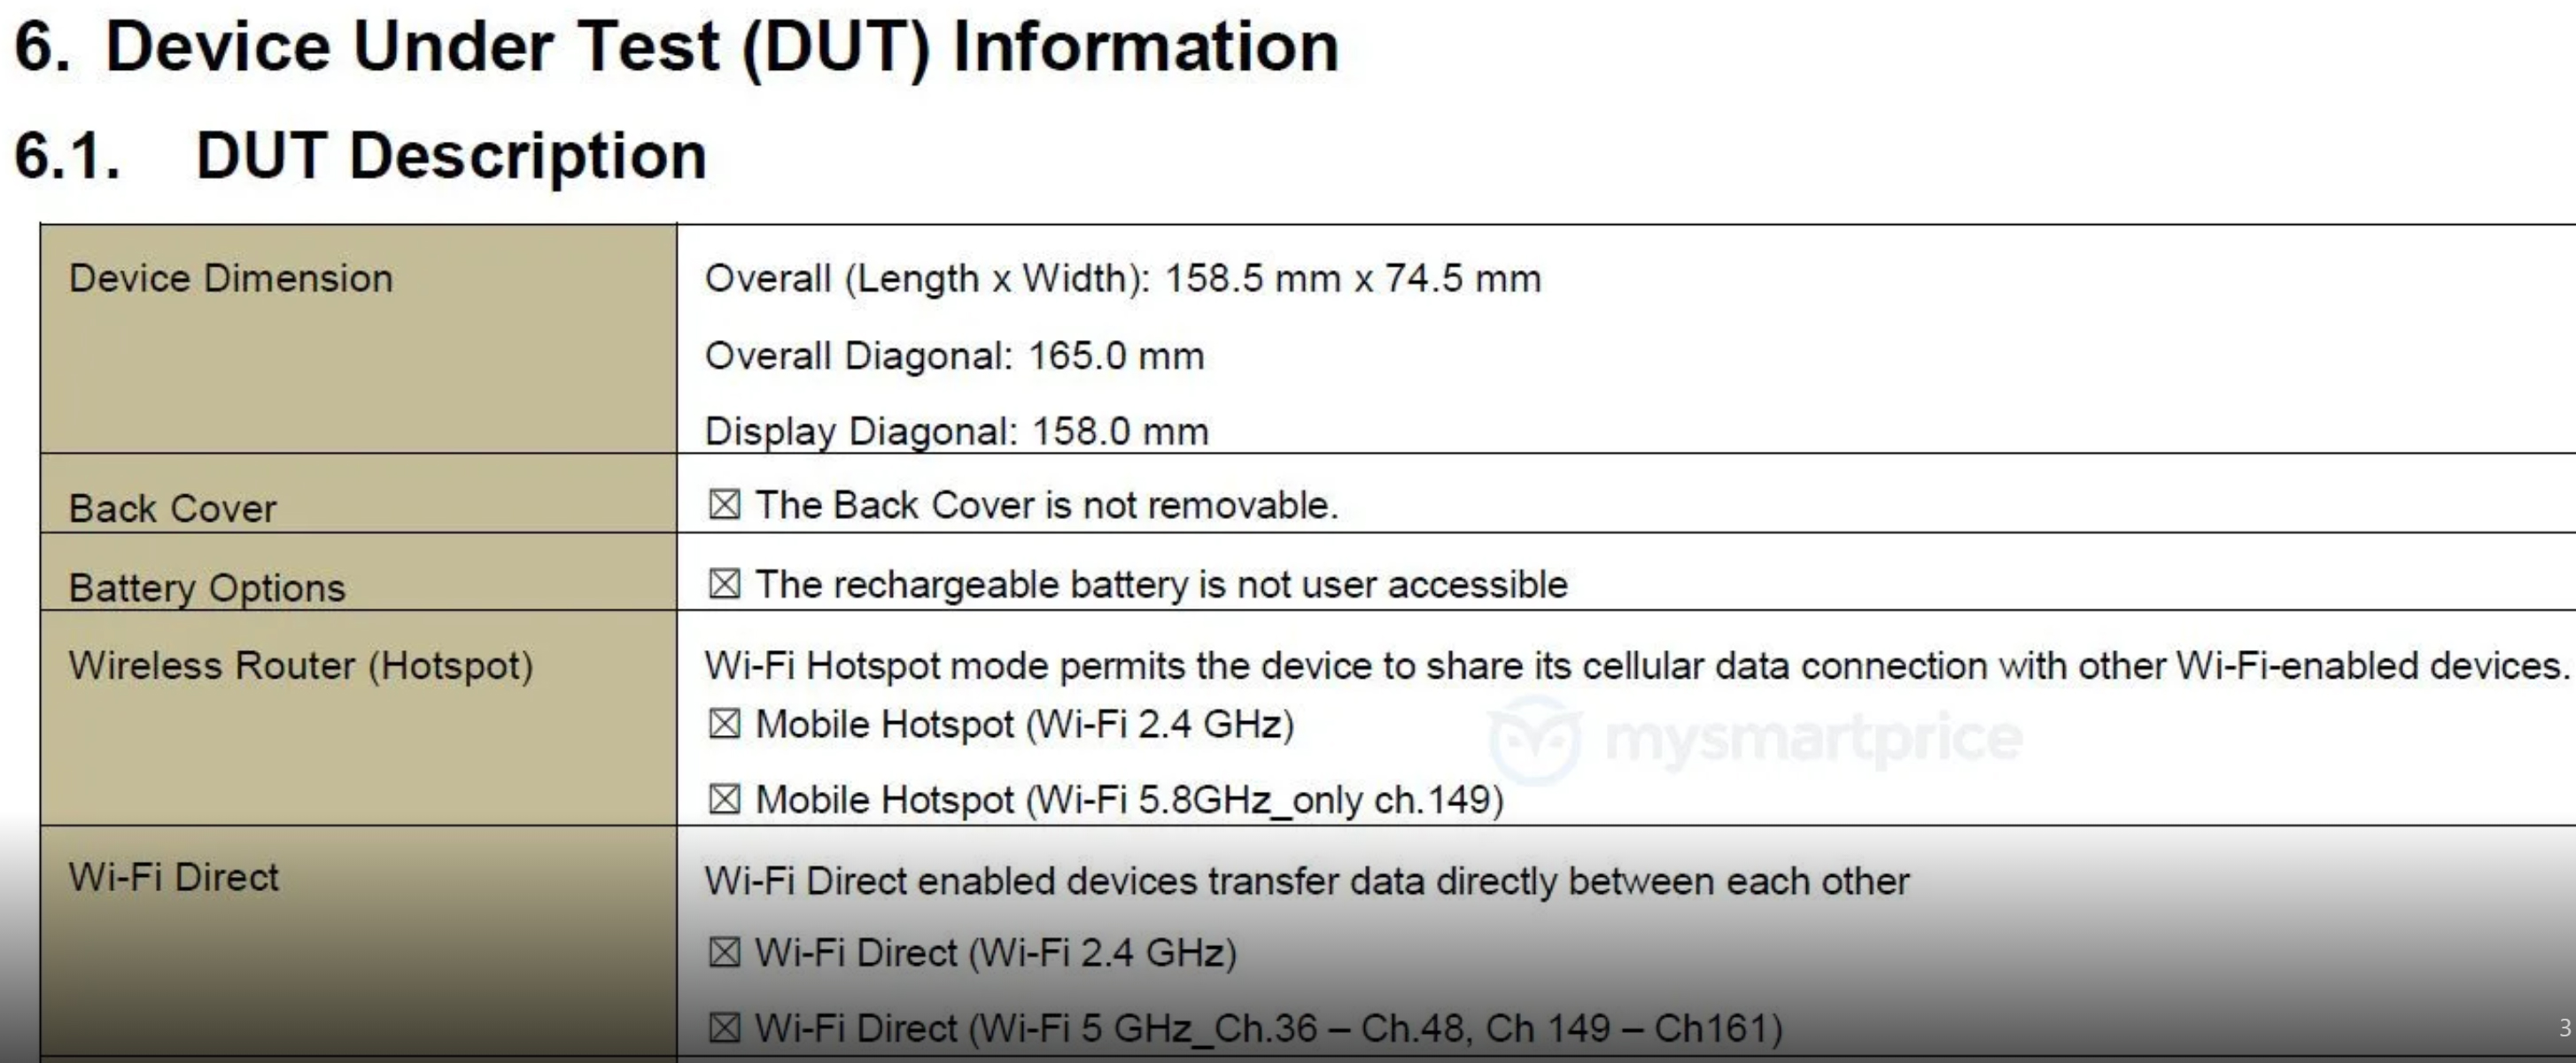 Samsung Galaxy A50 würde bald angekündigt und das sind seine Spezifikationen 4